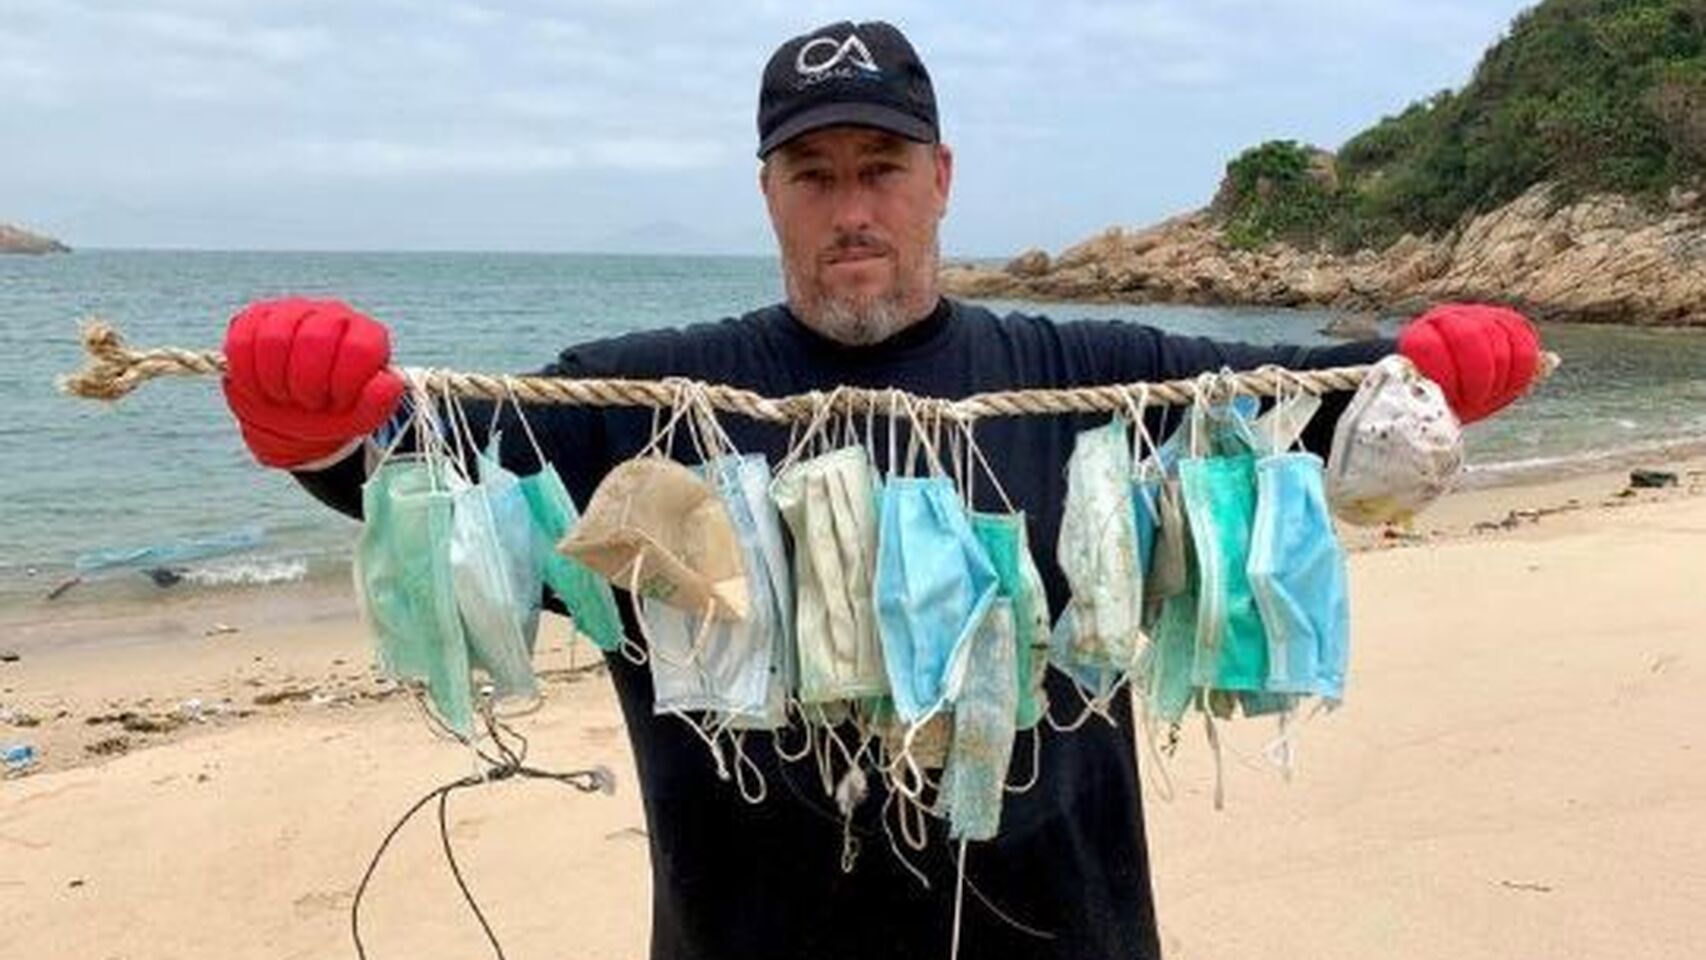 EMERGENCIA: Los materiales de protección contra el coronavirus se convierten en desechos sanitarios que debido a la mala gestión en países como China están colmando los mares de plástico.